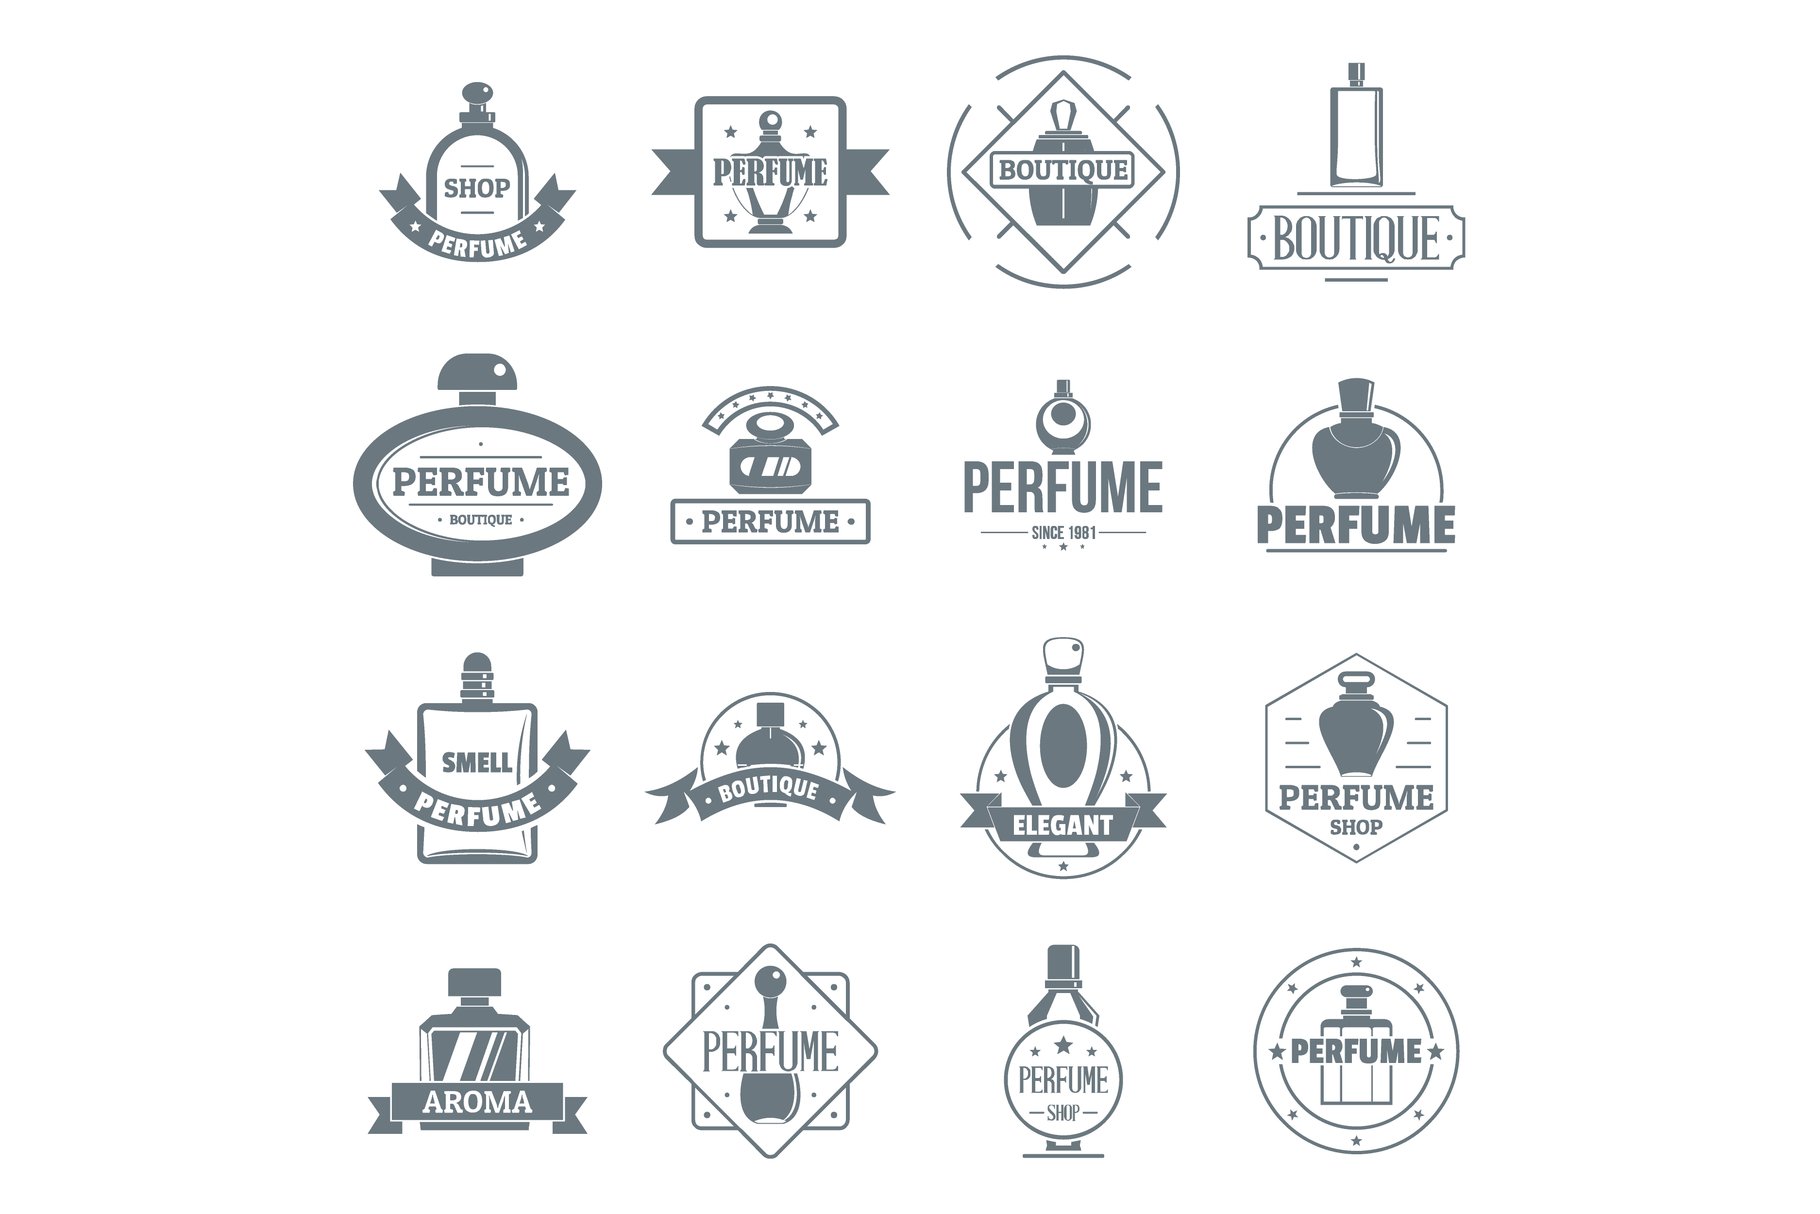 Perfume bottles logo icons set cover image.